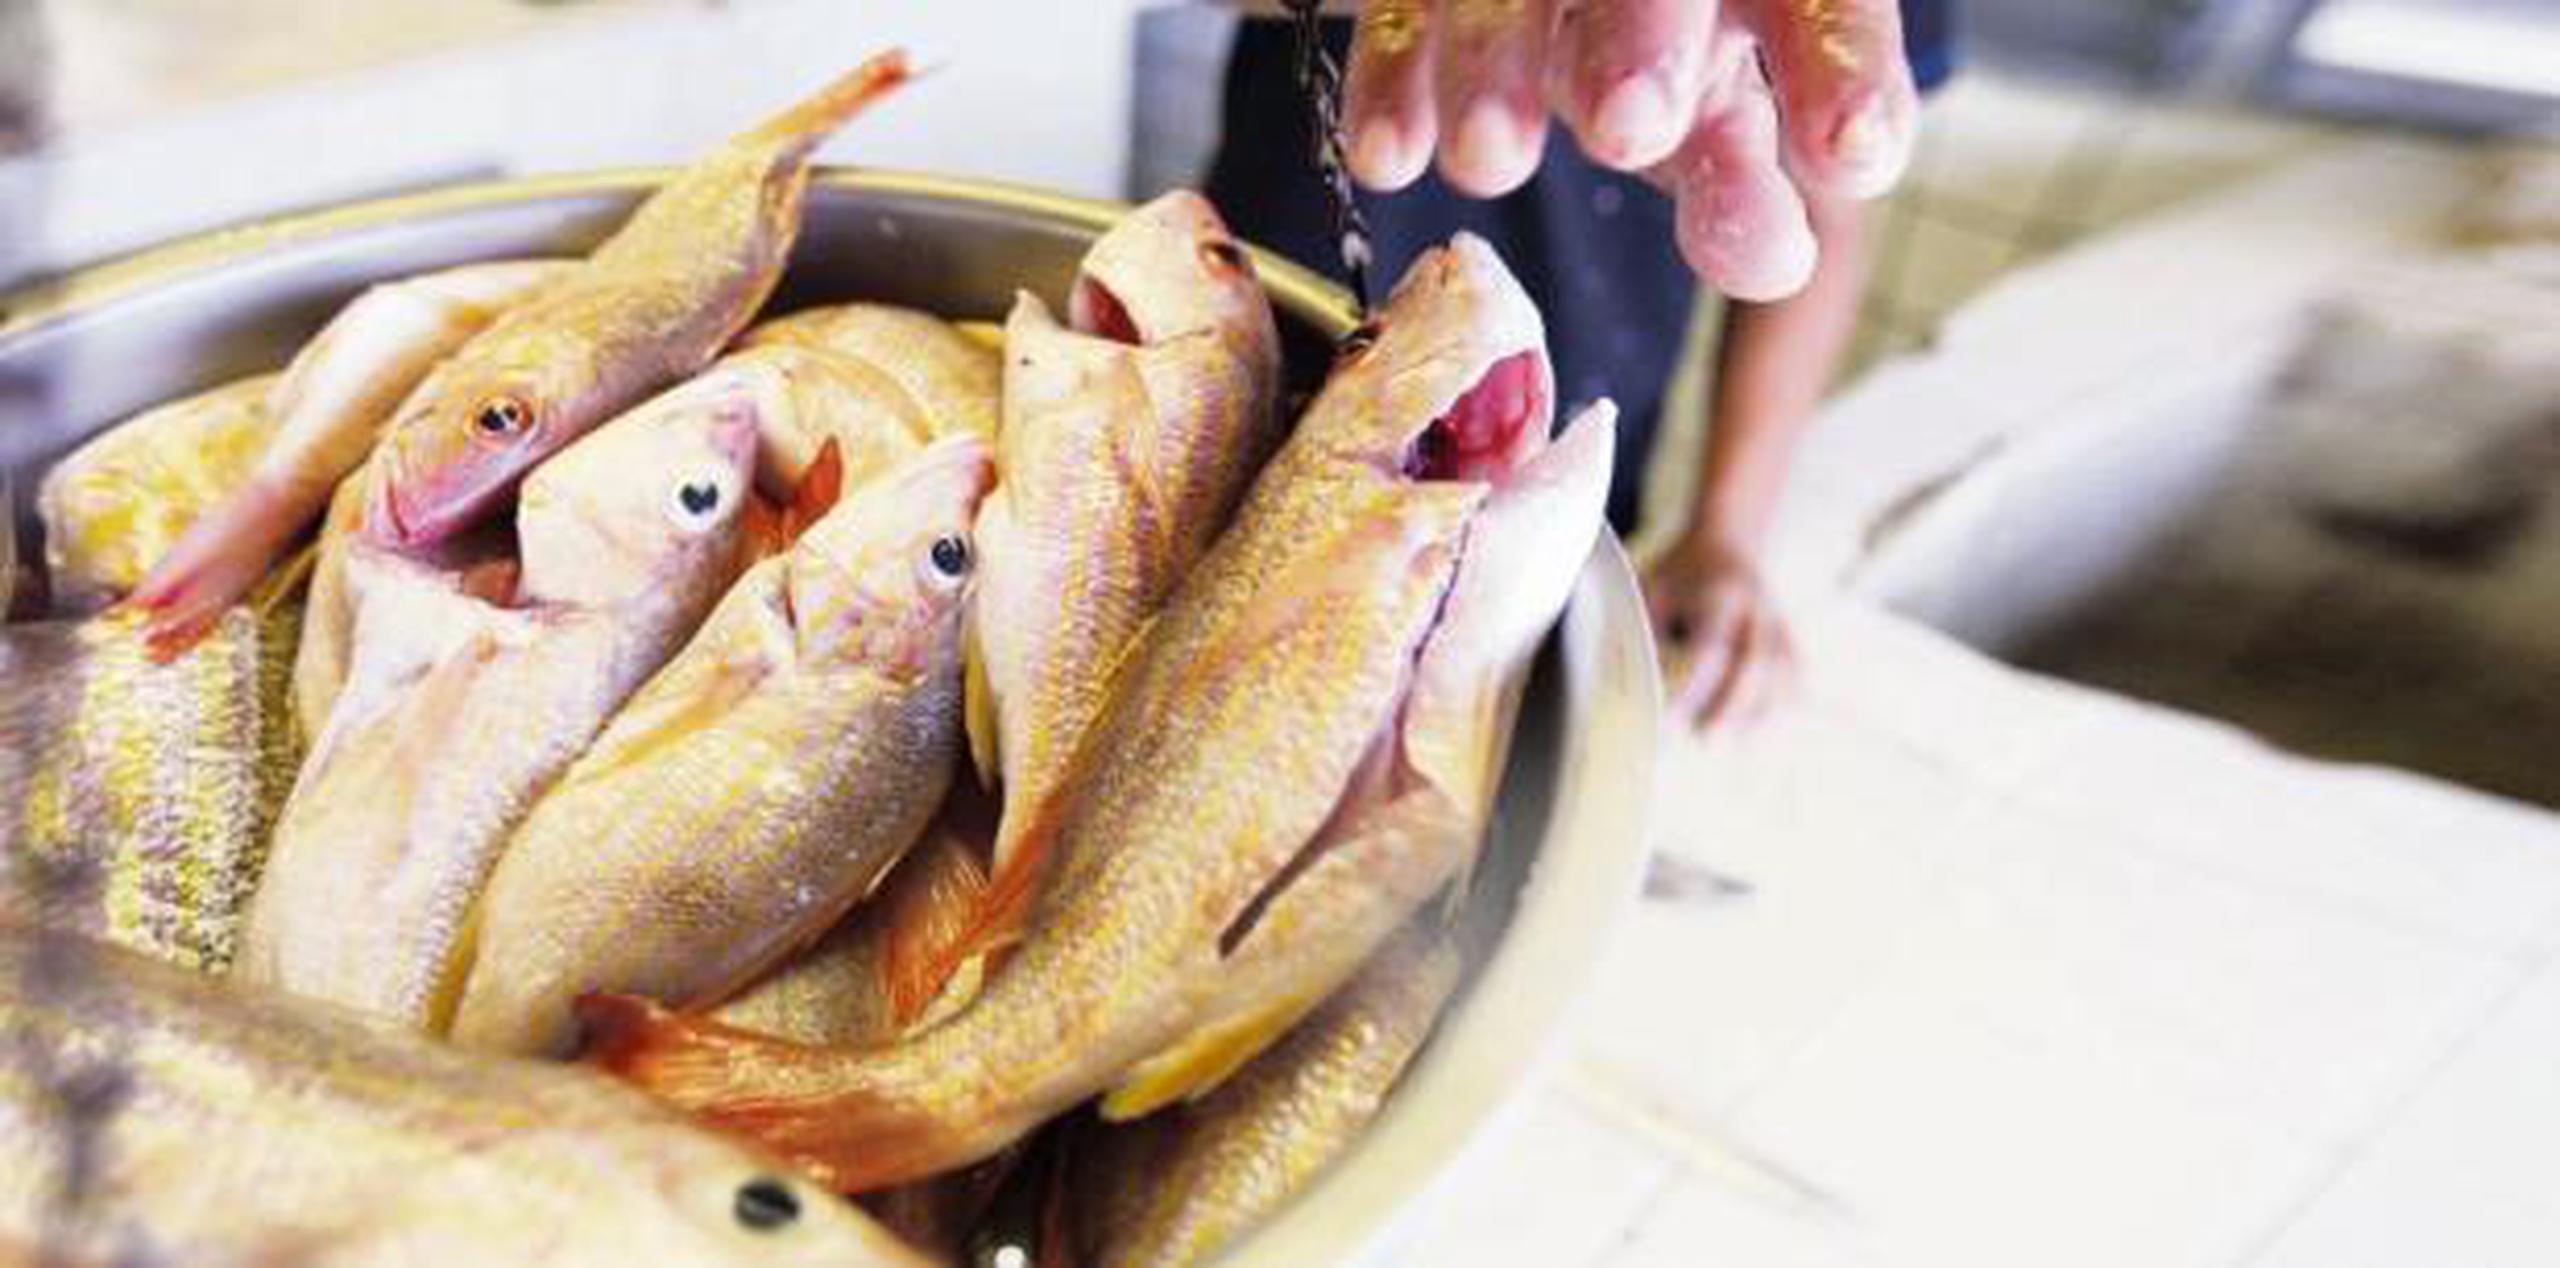 Al ser este el plato más consumido en la Semana Mayor, Rodríguez Mercado alertó sobre la ciguatera, una enfermedad derivada del pescado. (Archivo)